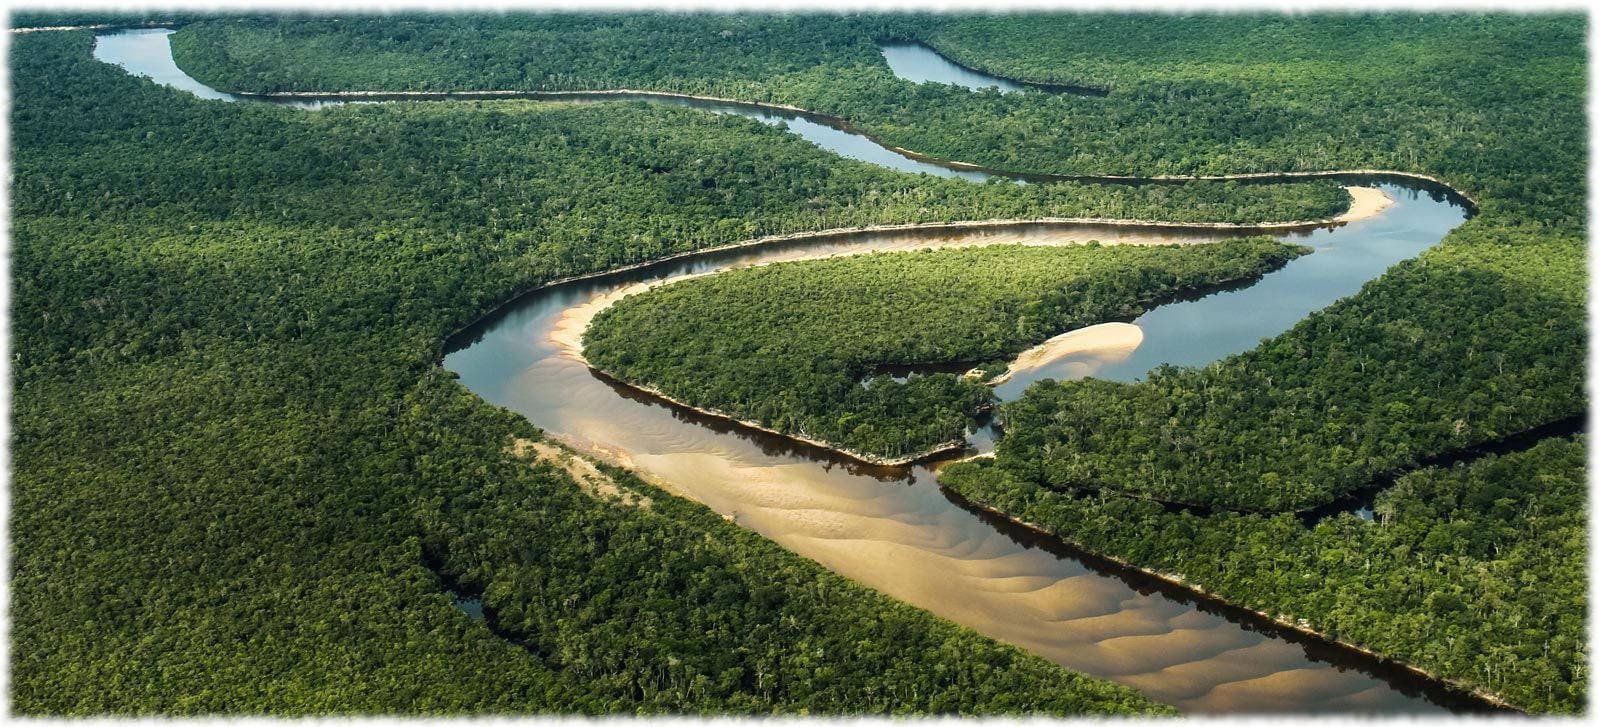 Реки полноводные весь год. Дельта Ориноко Венесуэла. Река Ориноко Южная Америка. Амазонка и Ориноко. Бассейн реки Ориноко Южная Америка.